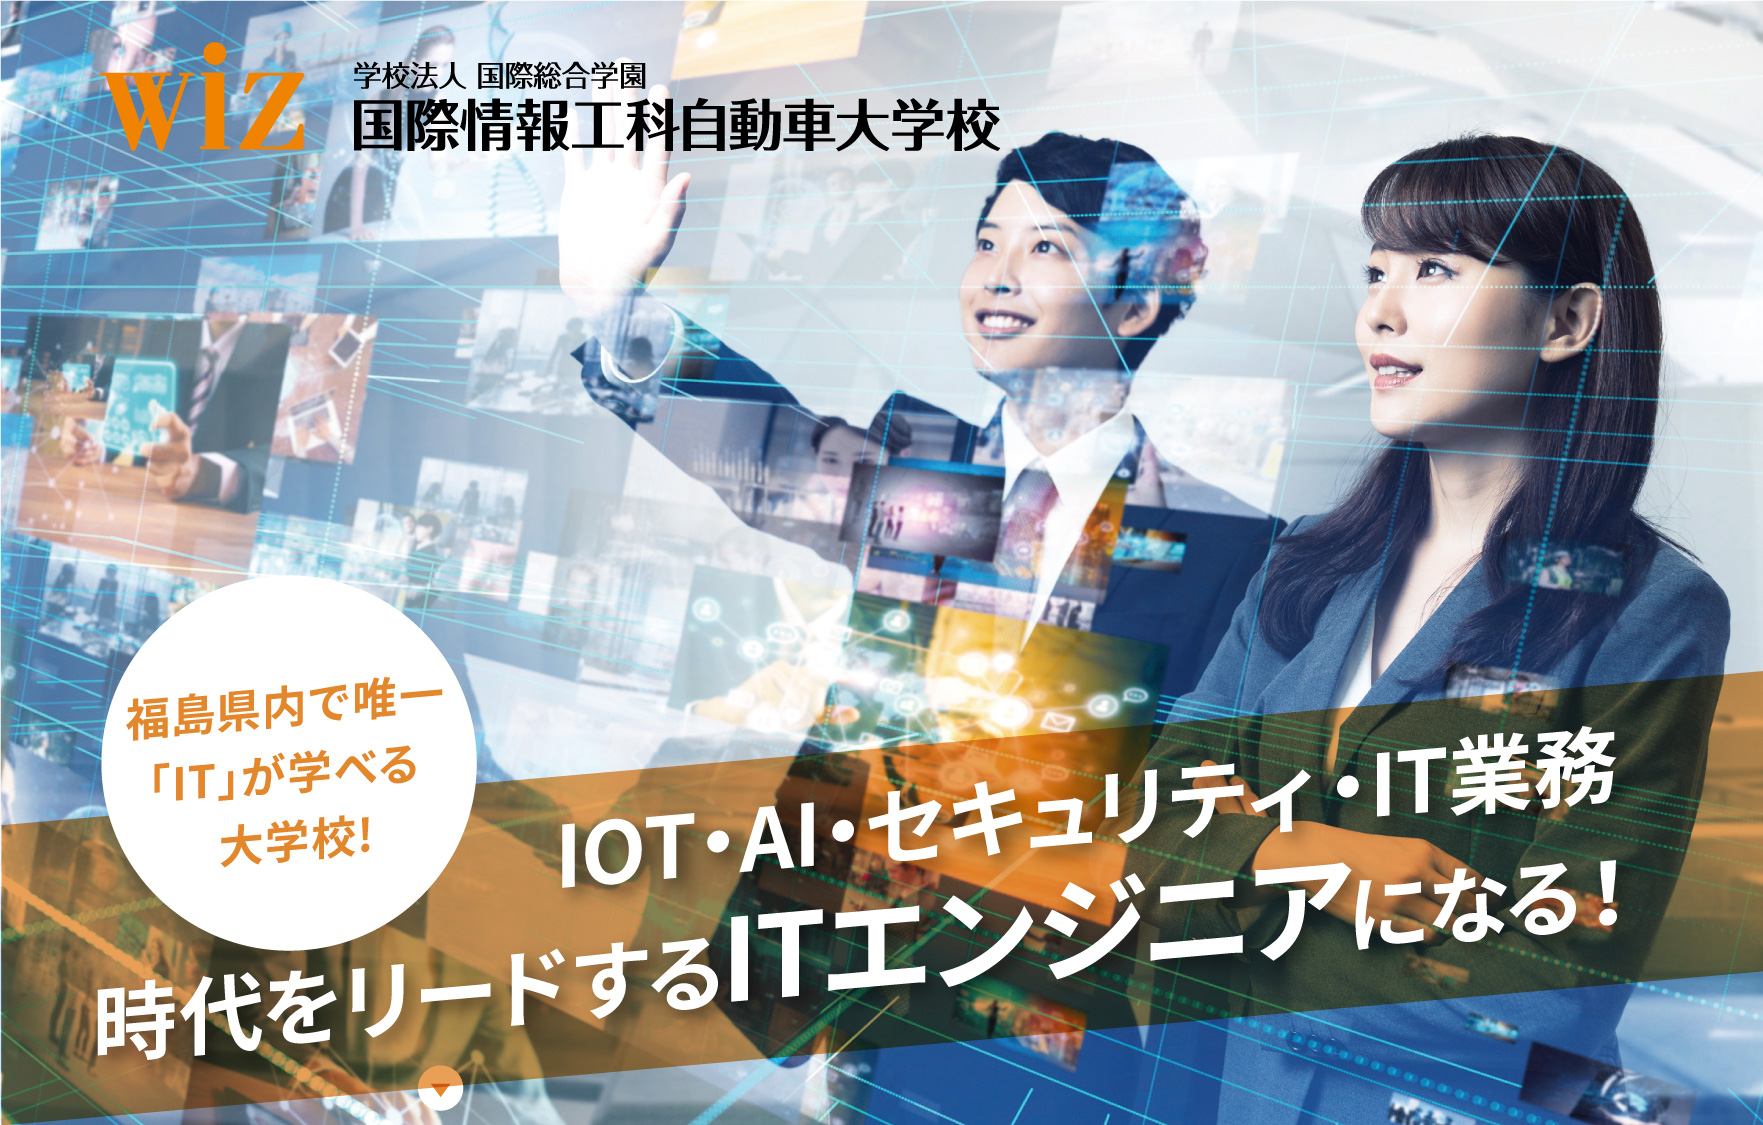 WiZ　専門学校 国際情報工科自動車大学校 福島県内で唯一「IT」が学べる大学校!IOT・AI・セキュリティ・IT業務時代をリードするITエンジニアになる！